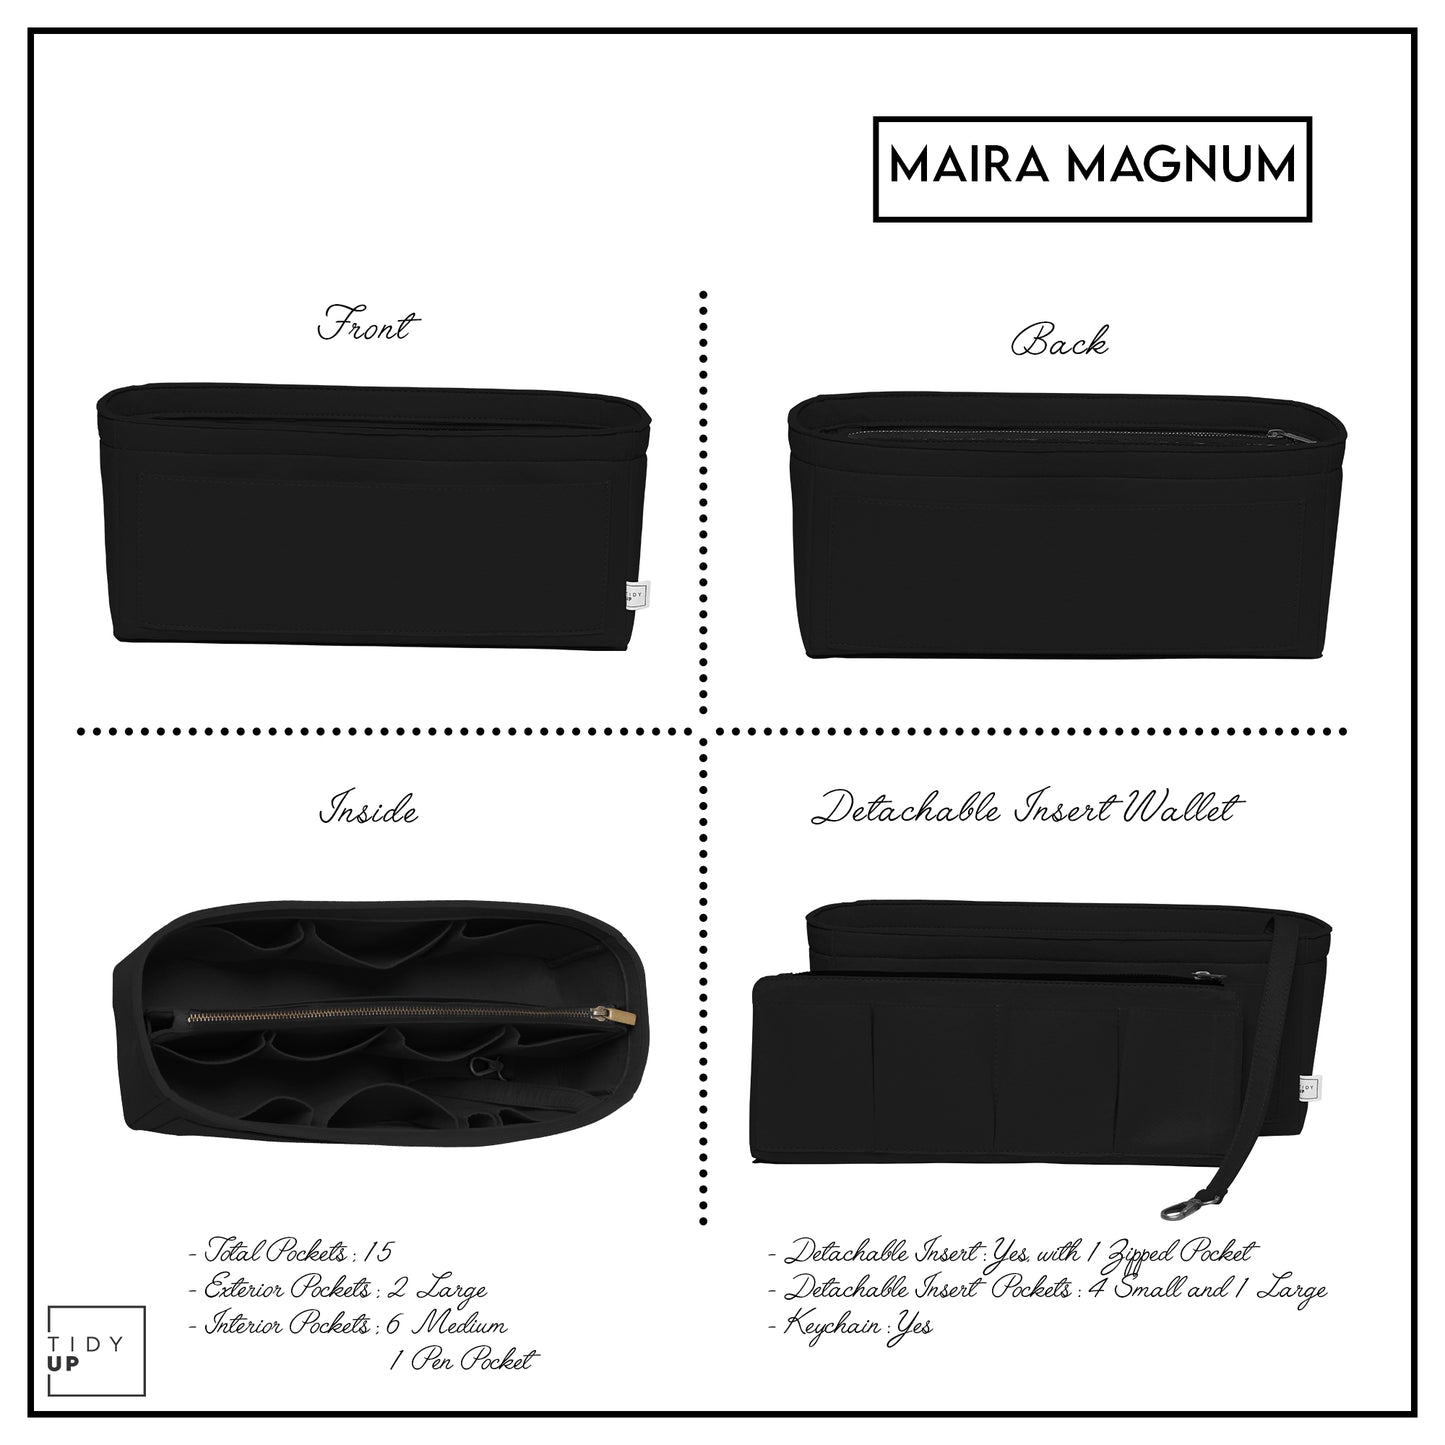 Maira Magnum